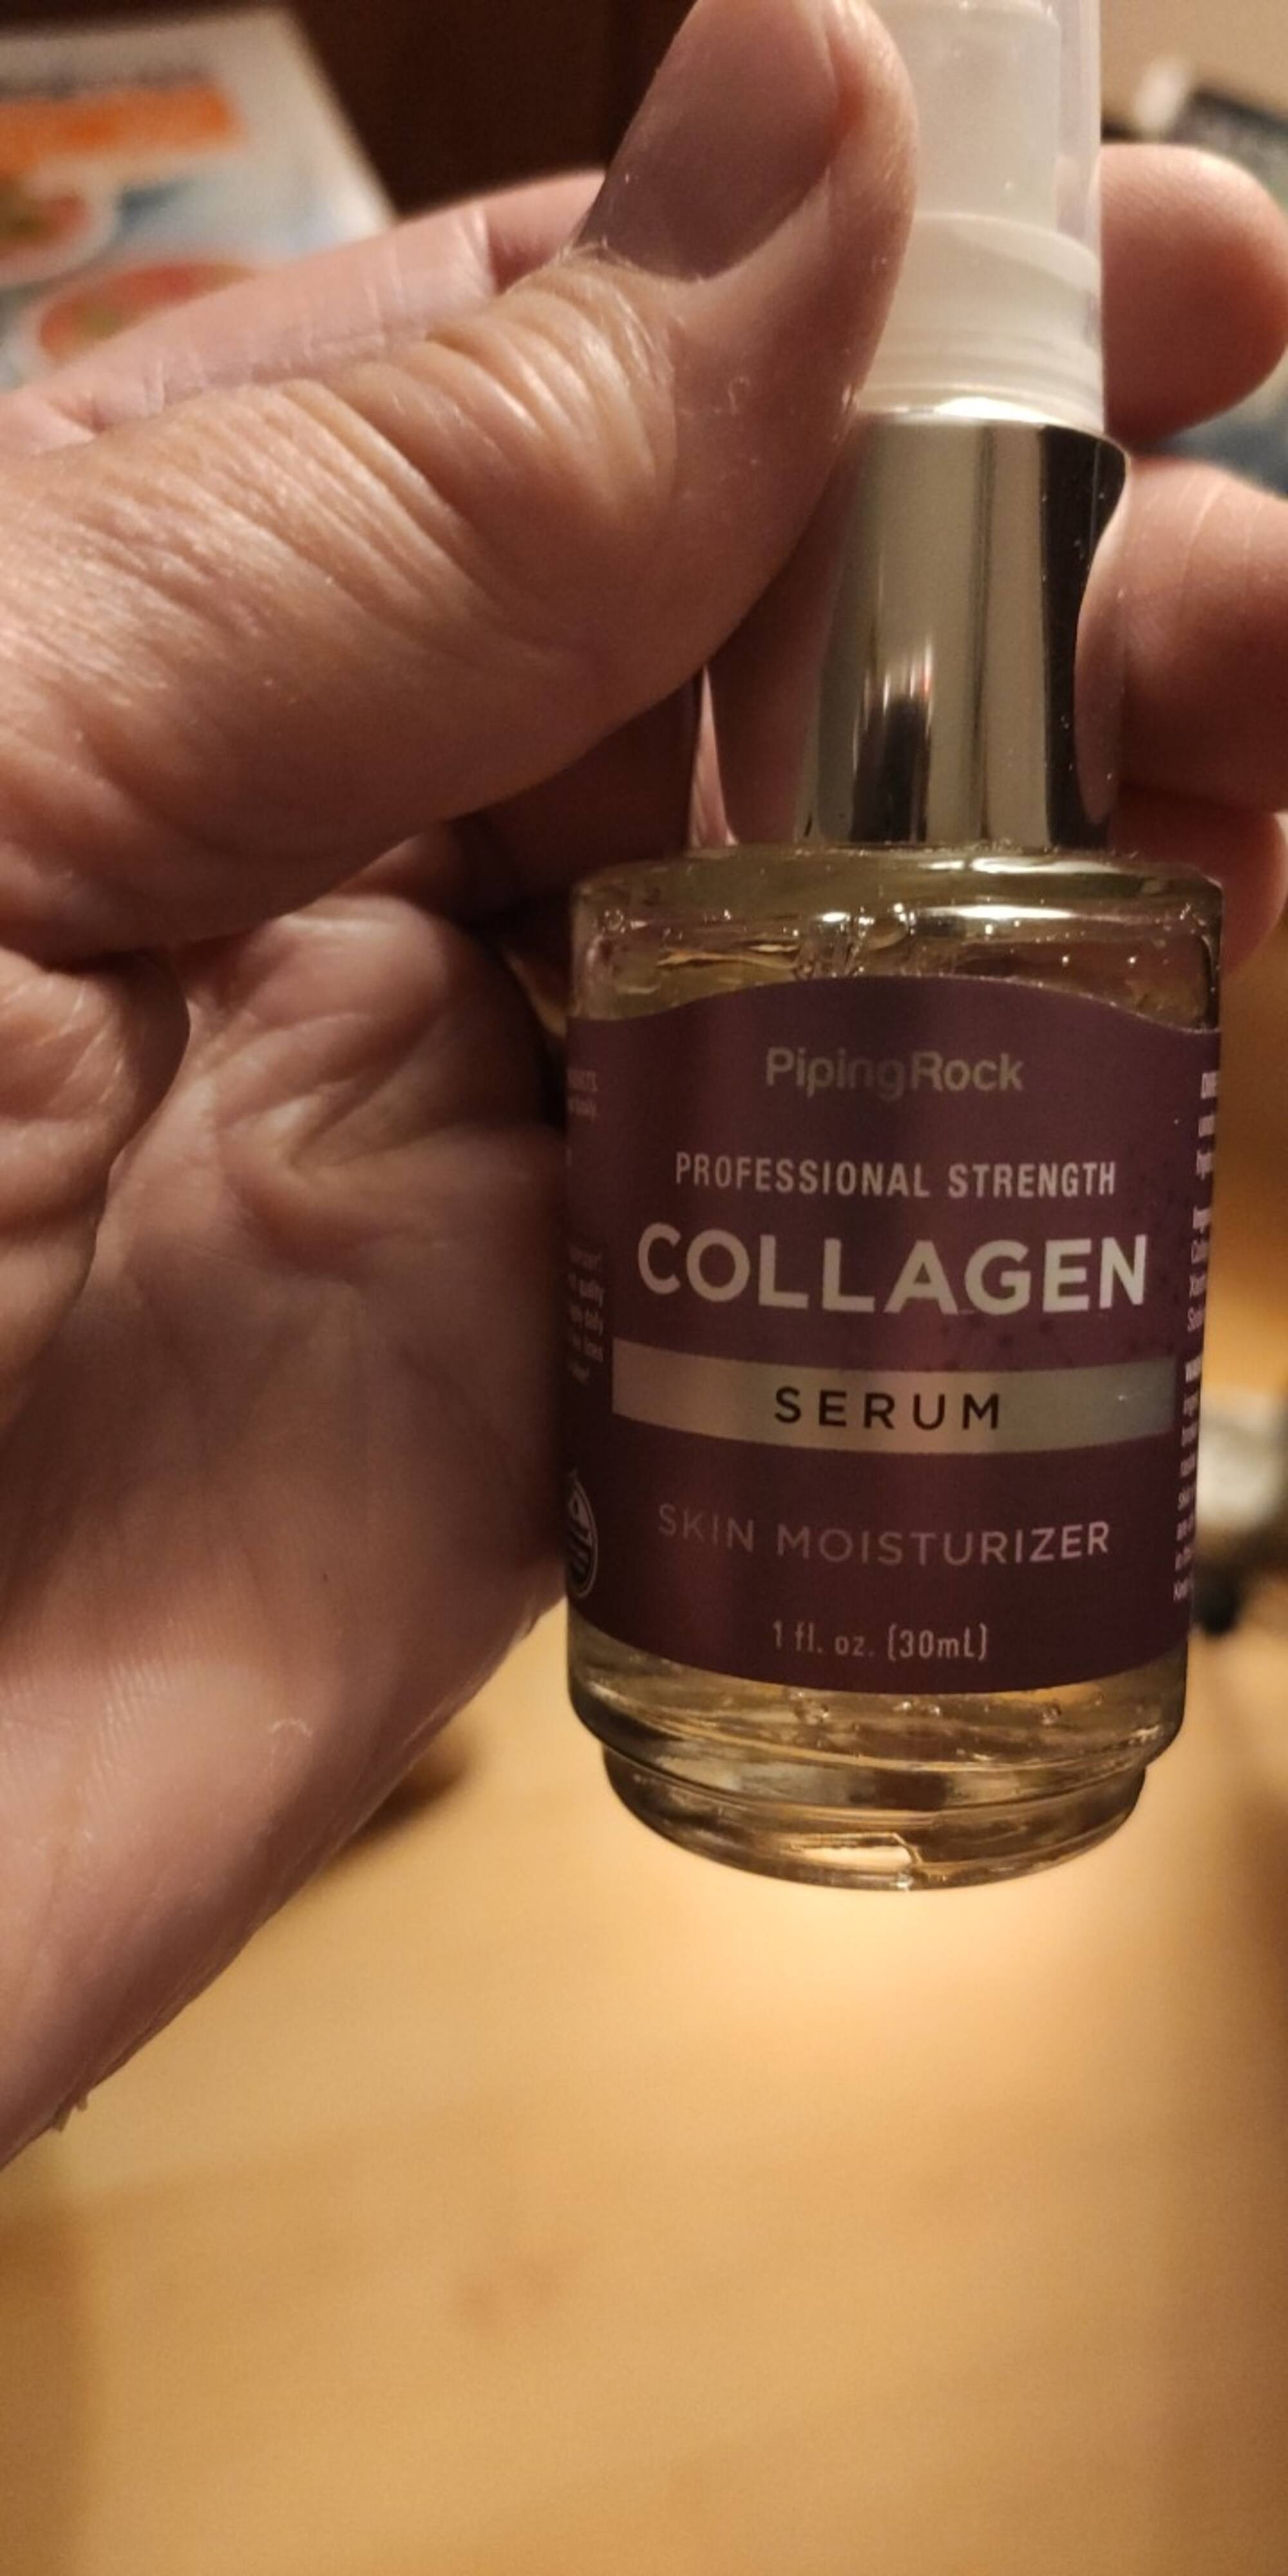 COLLAGEN - Piping rock - Serum skin moisturizer 